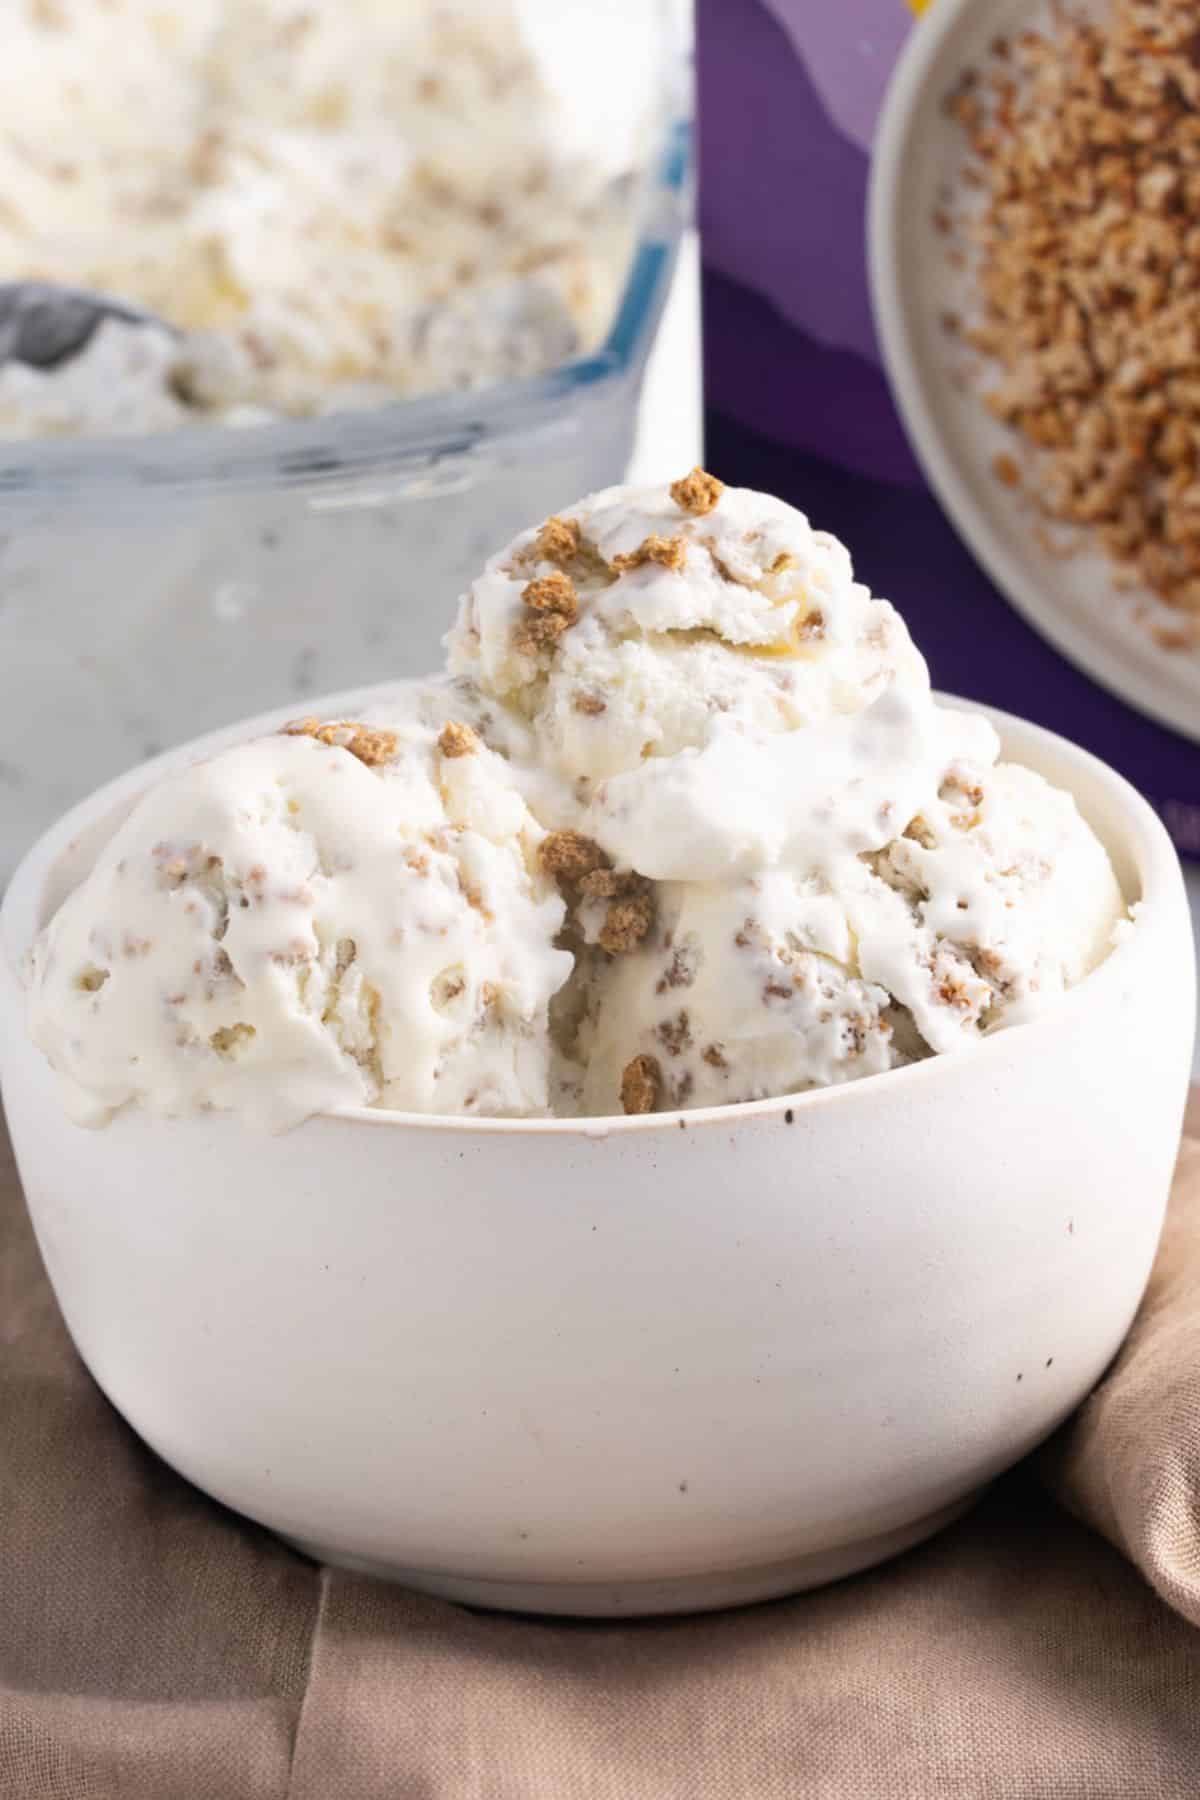 grape nut ice cream in a bowl